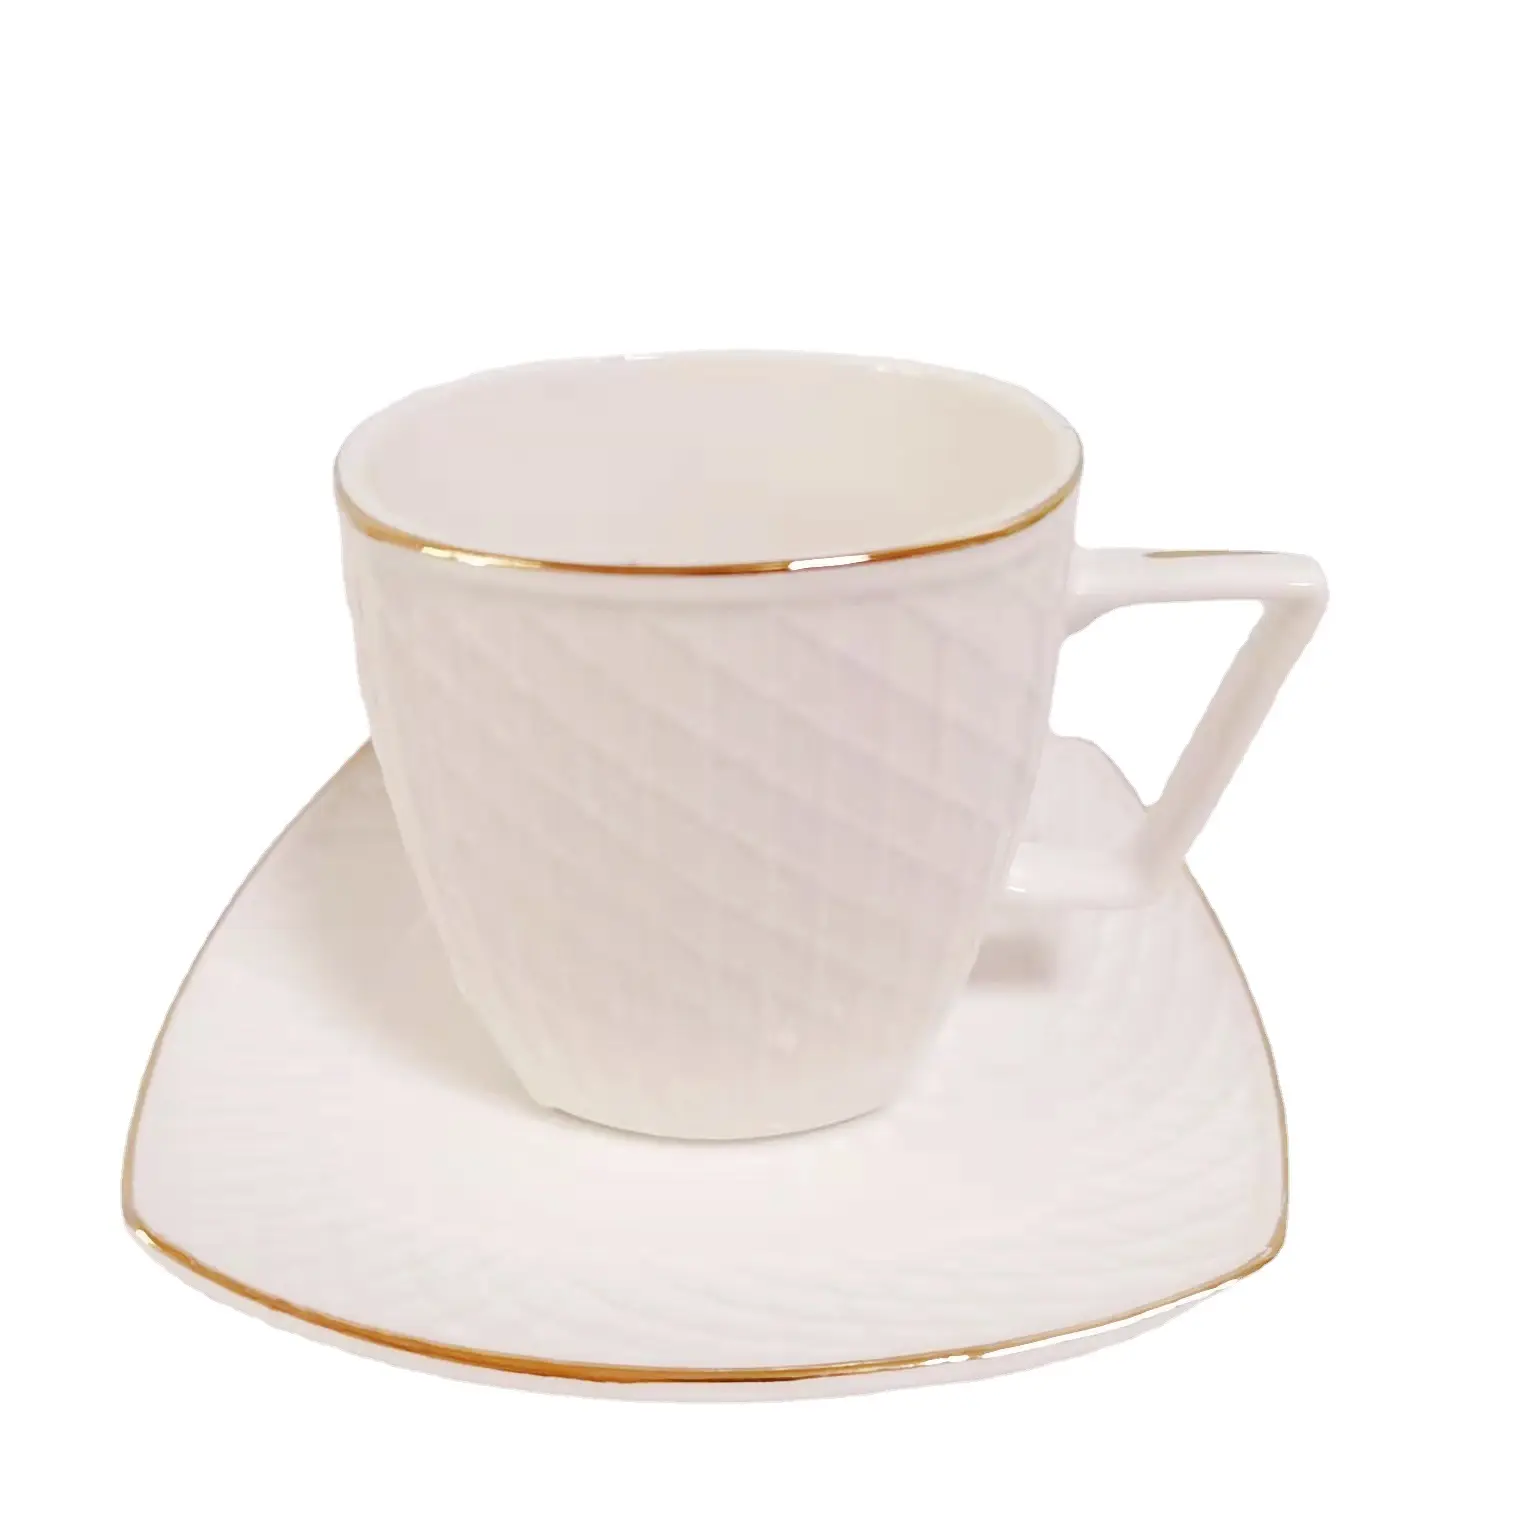 Простая белая керамическая кофейная чашка с золотым тиснением, набор кофейных чашек и блюдца